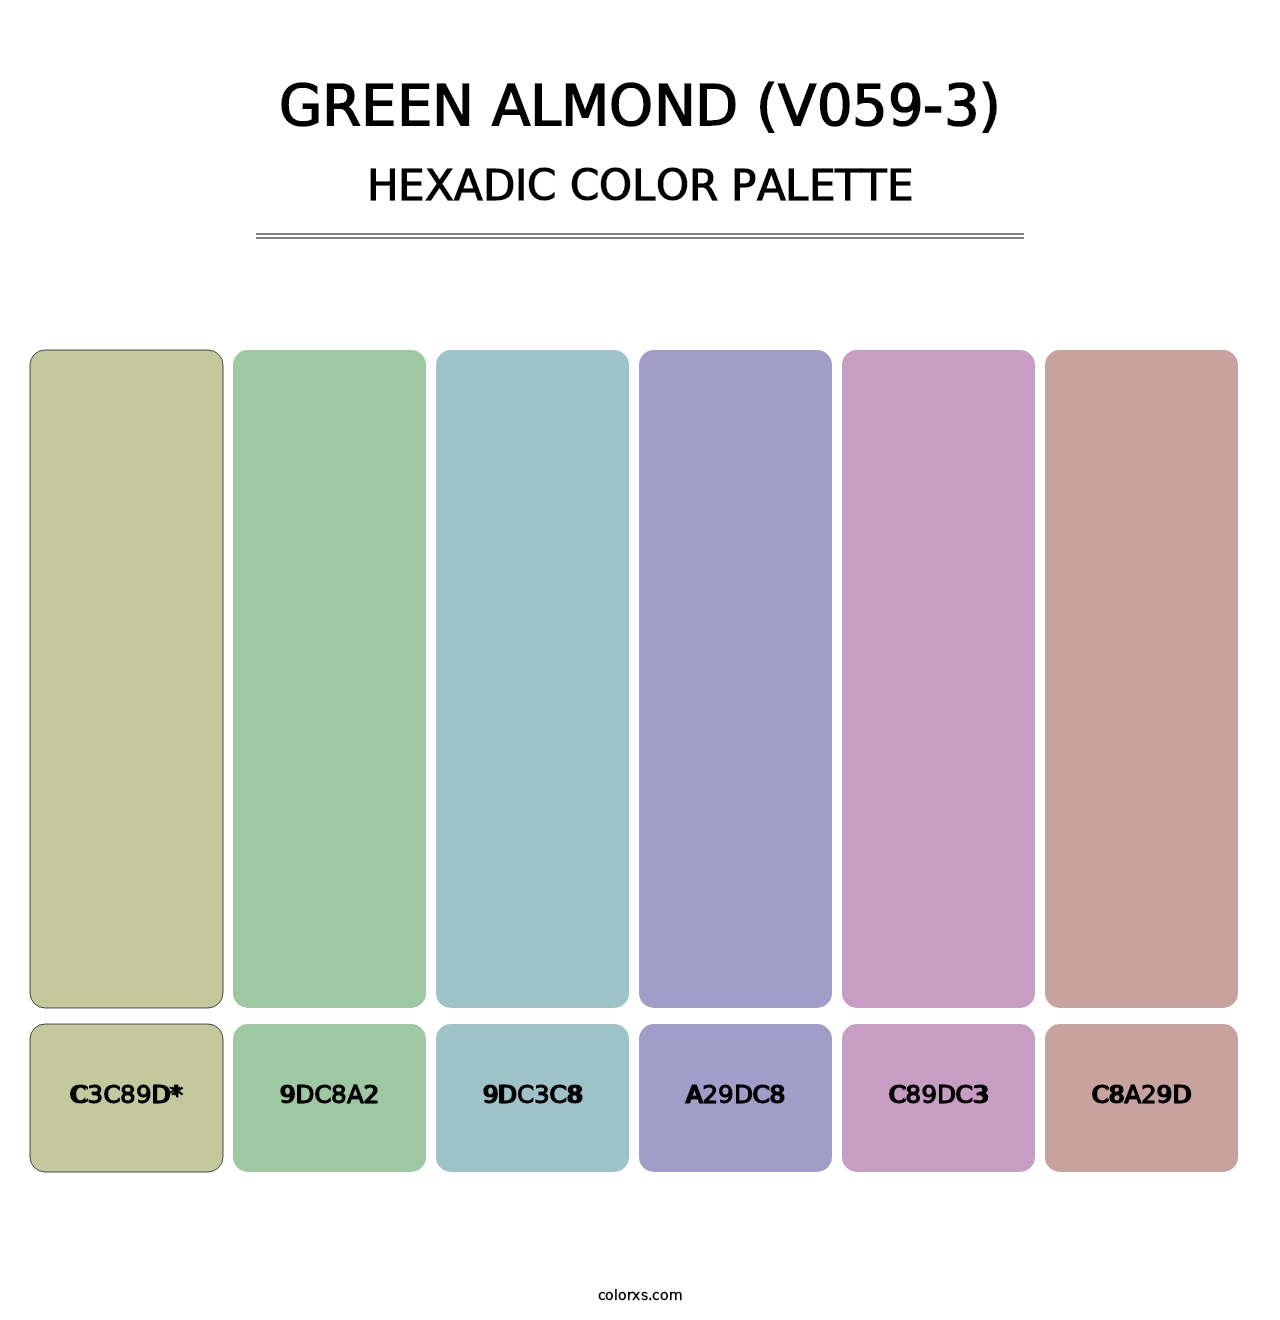 Green Almond (V059-3) - Hexadic Color Palette